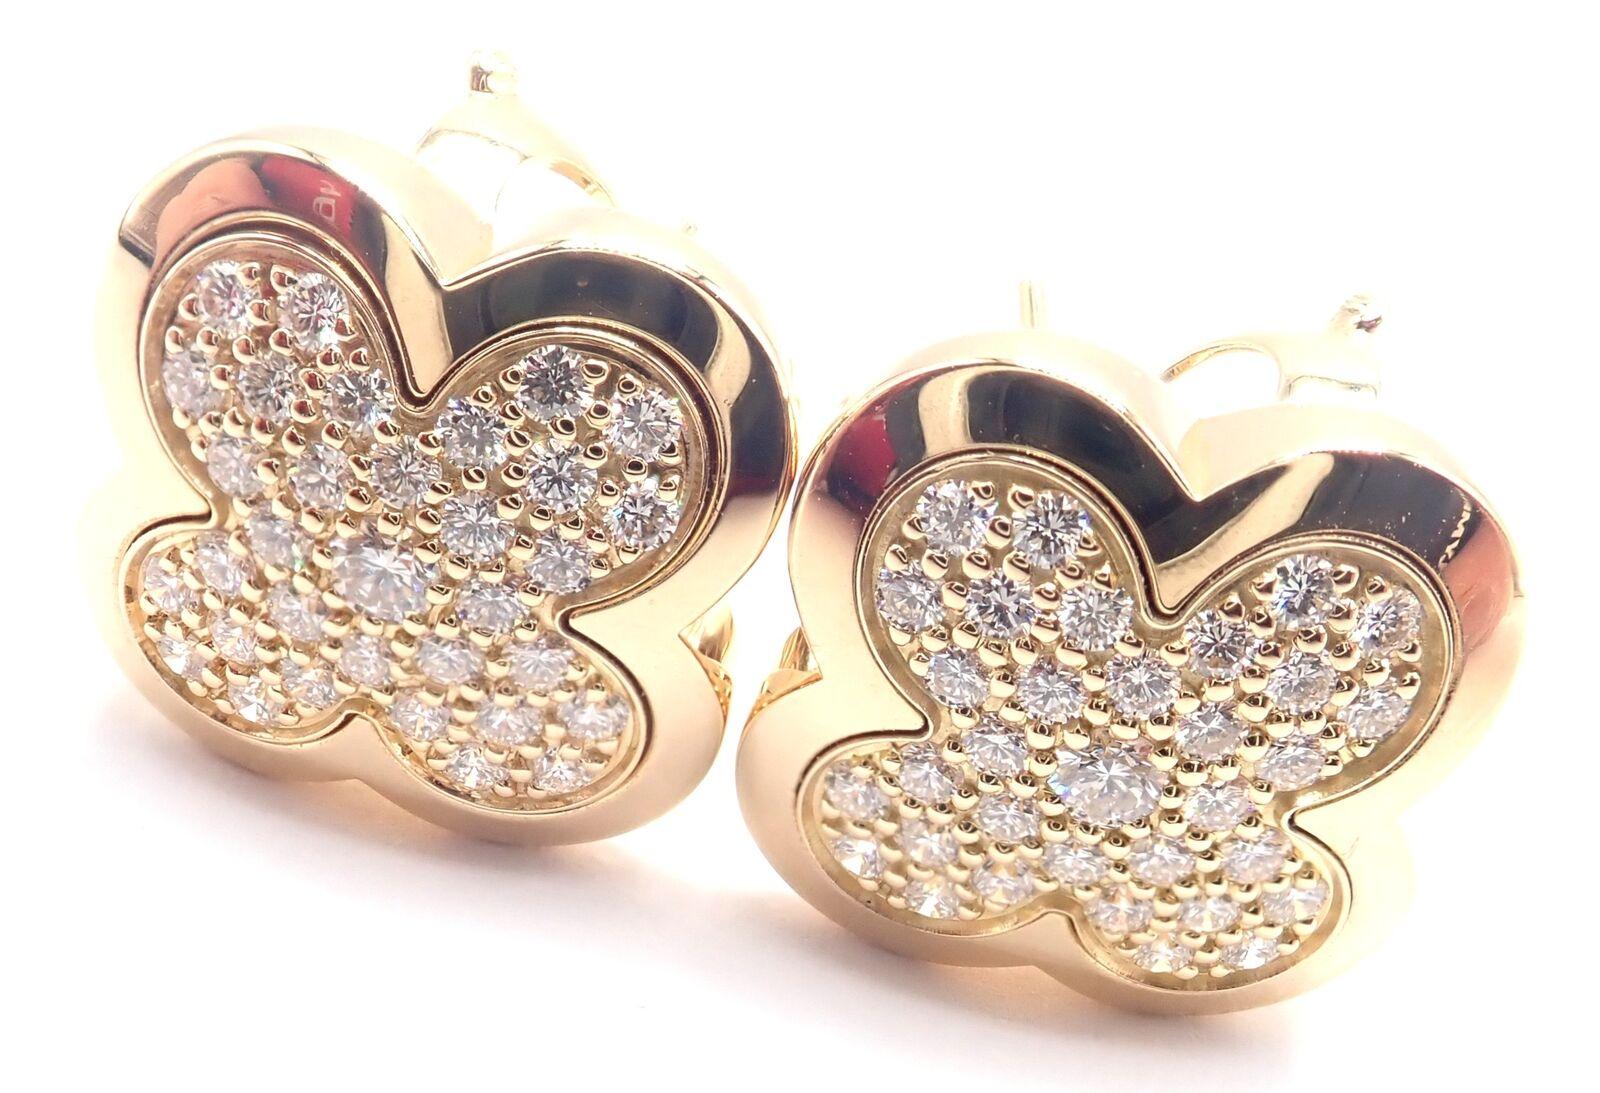 Boucles d'oreilles Alhambra en or jaune 18k et diamant pur par Van Cleef & Arpels.
Avec un diamant rond de taille brillante, pureté VVS1, couleur E, poids total 1,65 ct.
Ces boucles d'oreilles sont destinées aux oreilles percées.
Détails